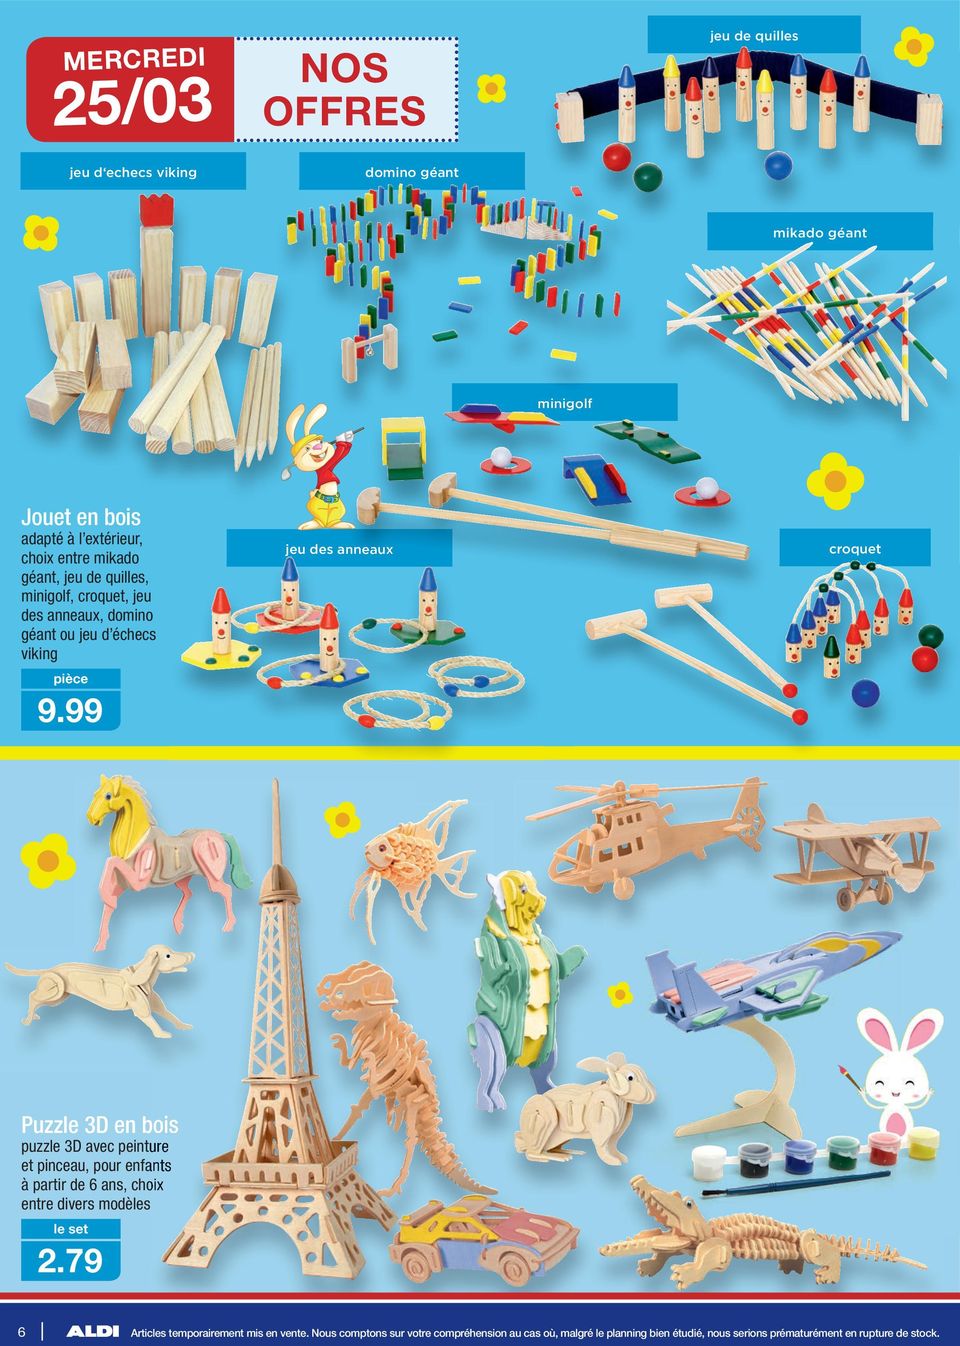 99 Puzzle 3D en bois puzzle 3D avec peinture et pinceau, pour enfants à partir de 6 ans, choix entre divers modèles 2.